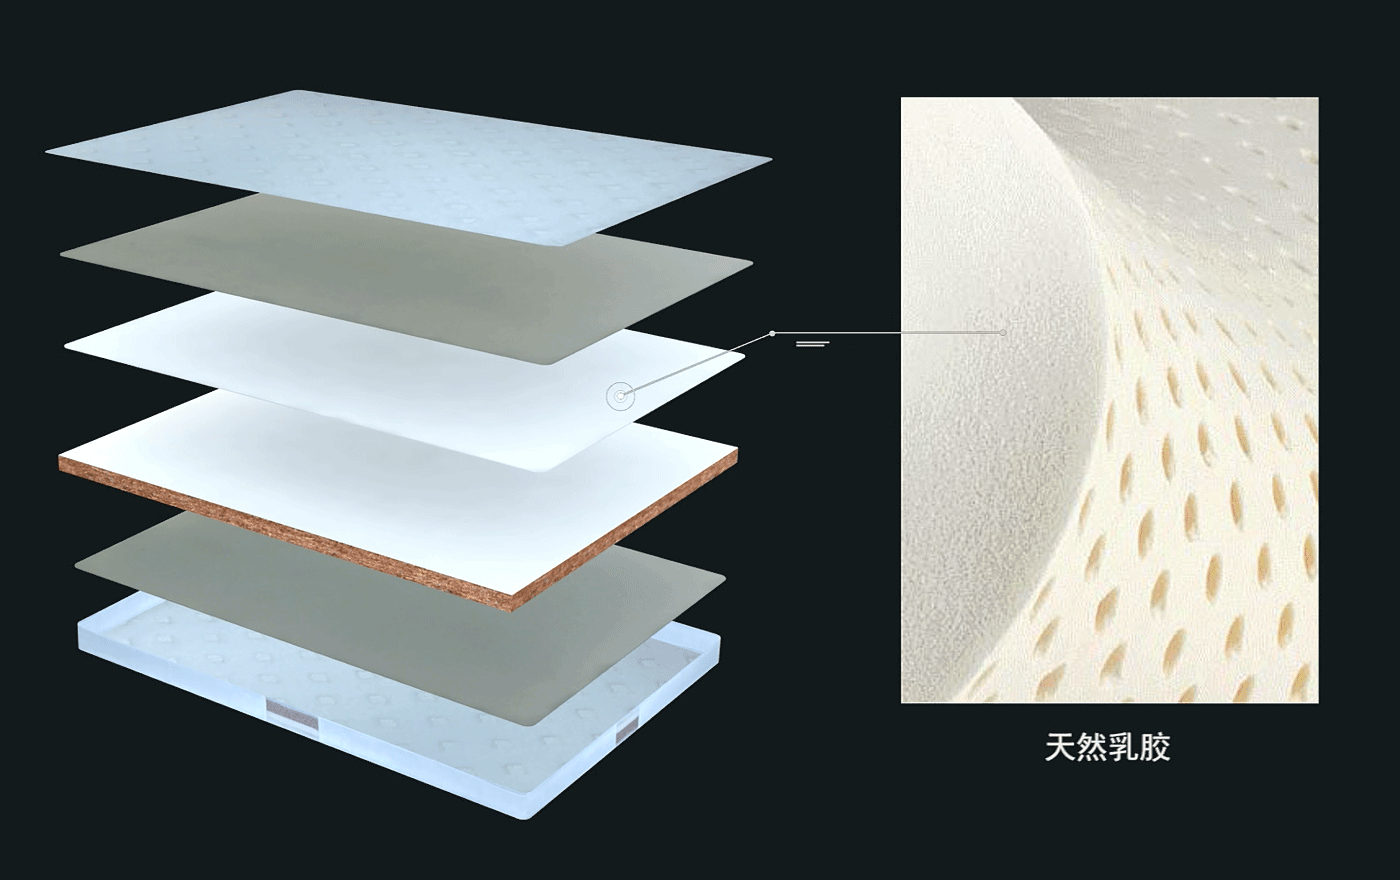 吉思亚麻乳胶奢华床垫系列J-10HBR--天然乳胶